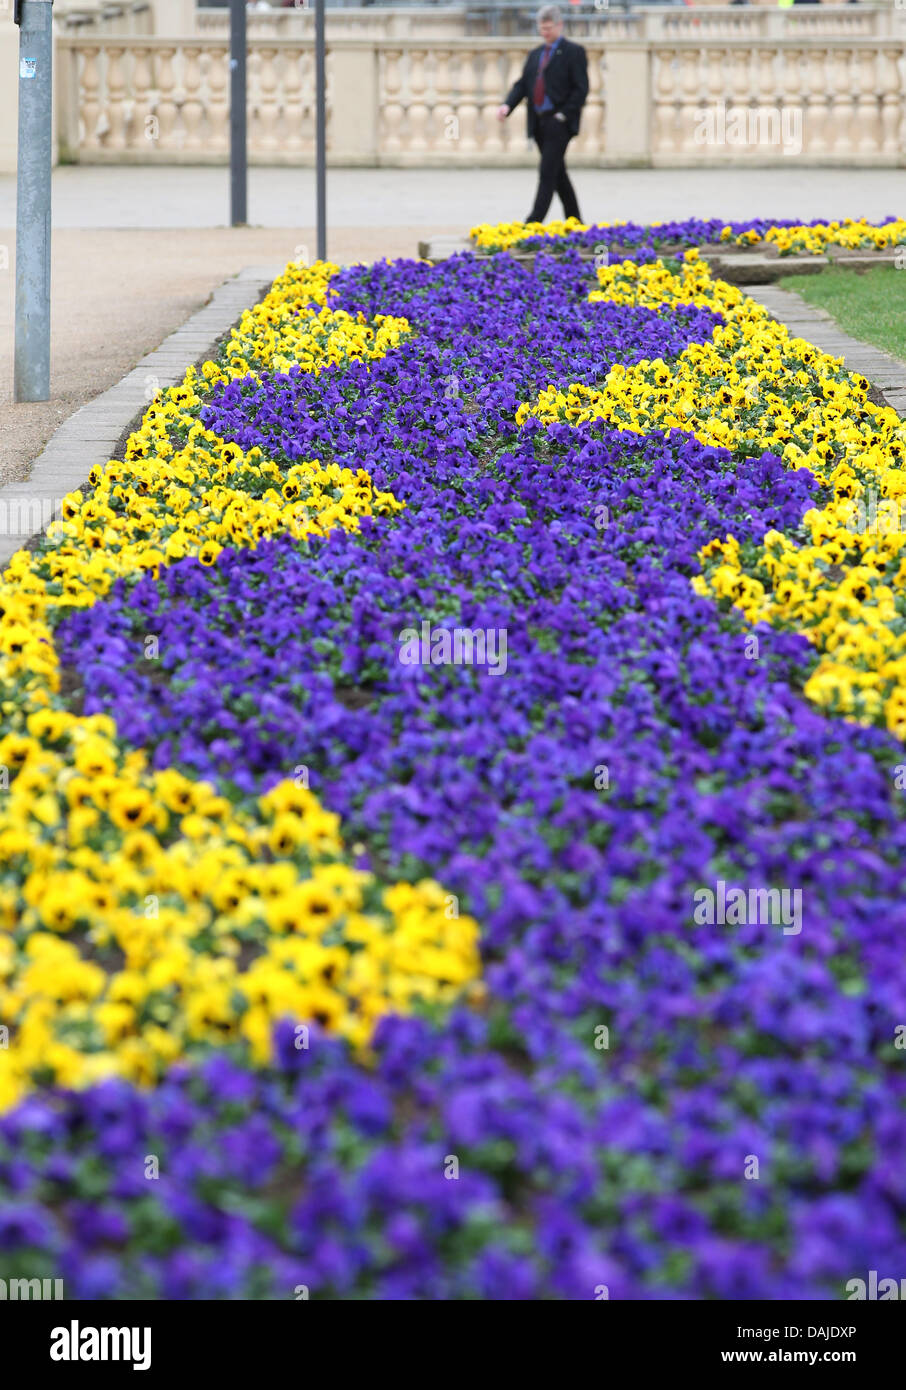 Gelbe und blaue Stiefmütterchen abdecken des Stadtzentrums in Schwerin, Deutschland, 6. April 2011. Frühlingsblumen sind in voller Kraft, aber die Sonne ist noch eine lange Zeit kommen. Foto: Bernd Wuestneck Stockfoto